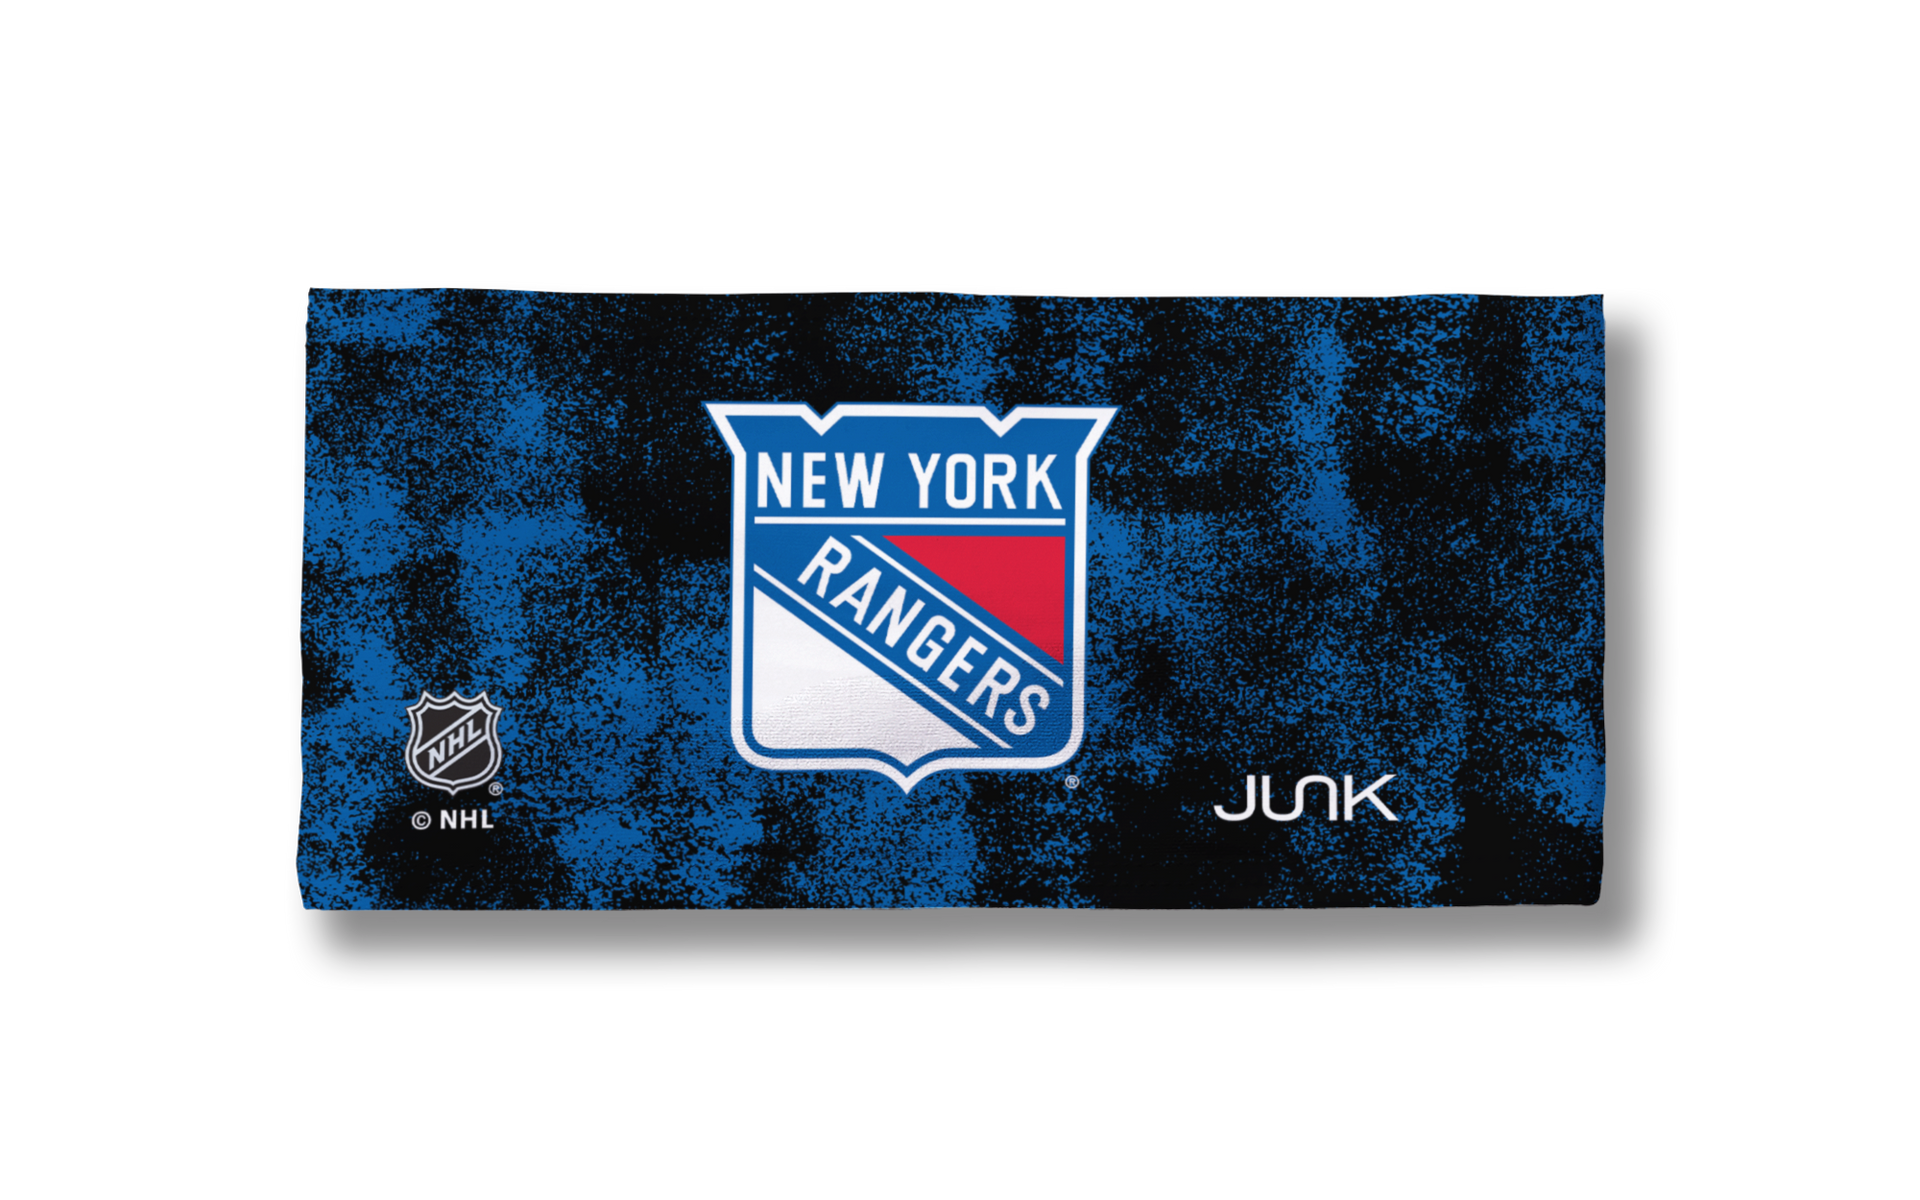 New York Rangers: Grunge Headband - View 3